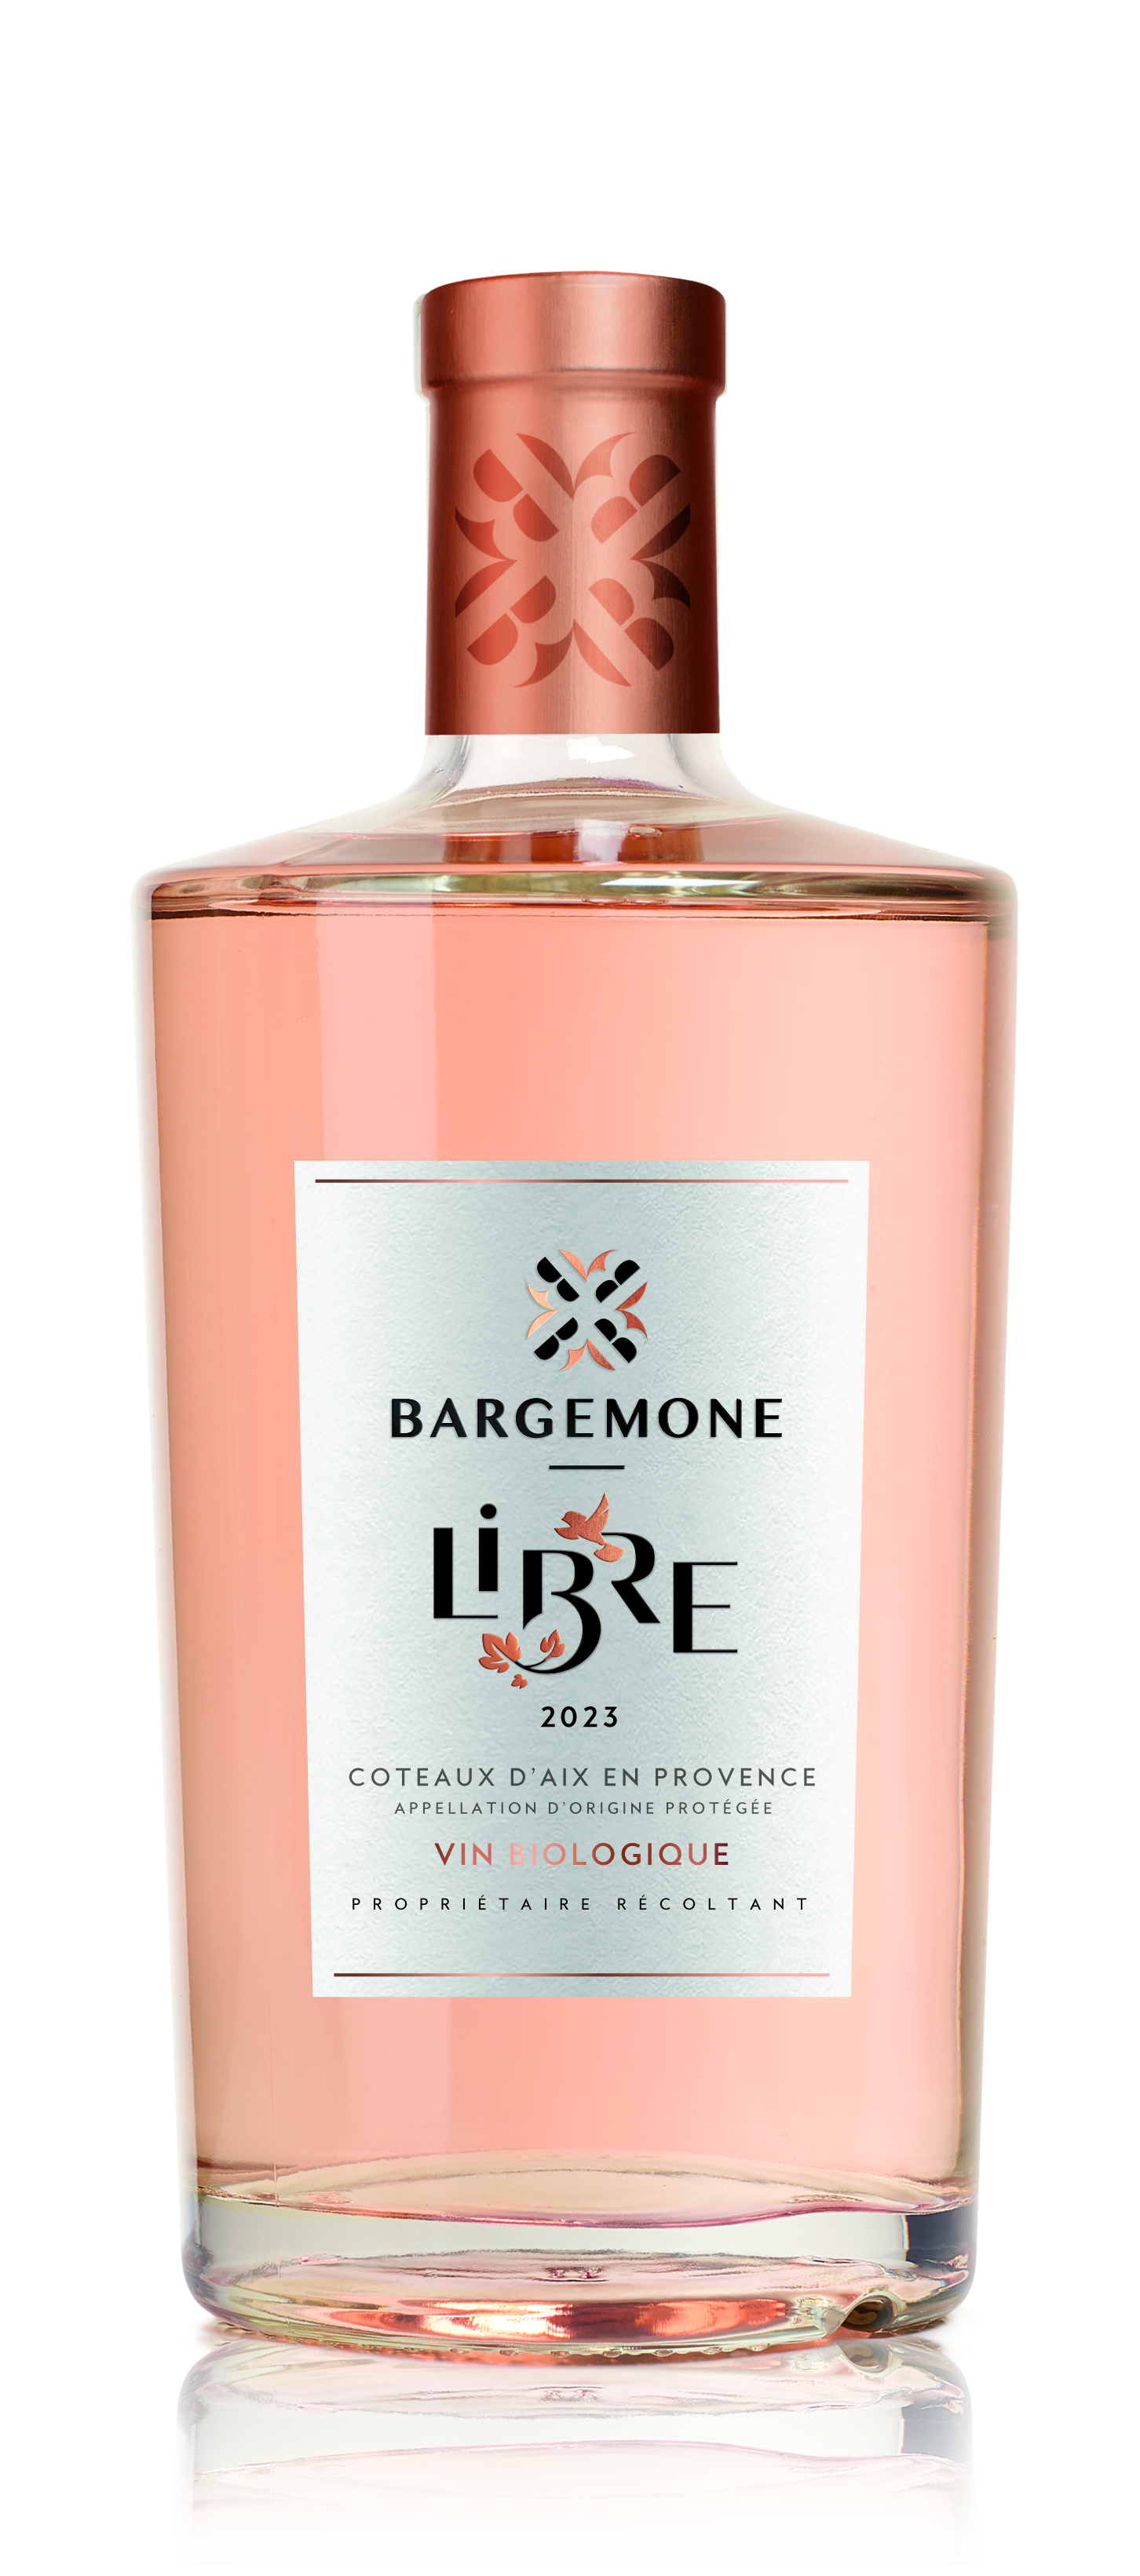 La Bargemone Libre Coteaux d'Aix en Provence Rose 2023